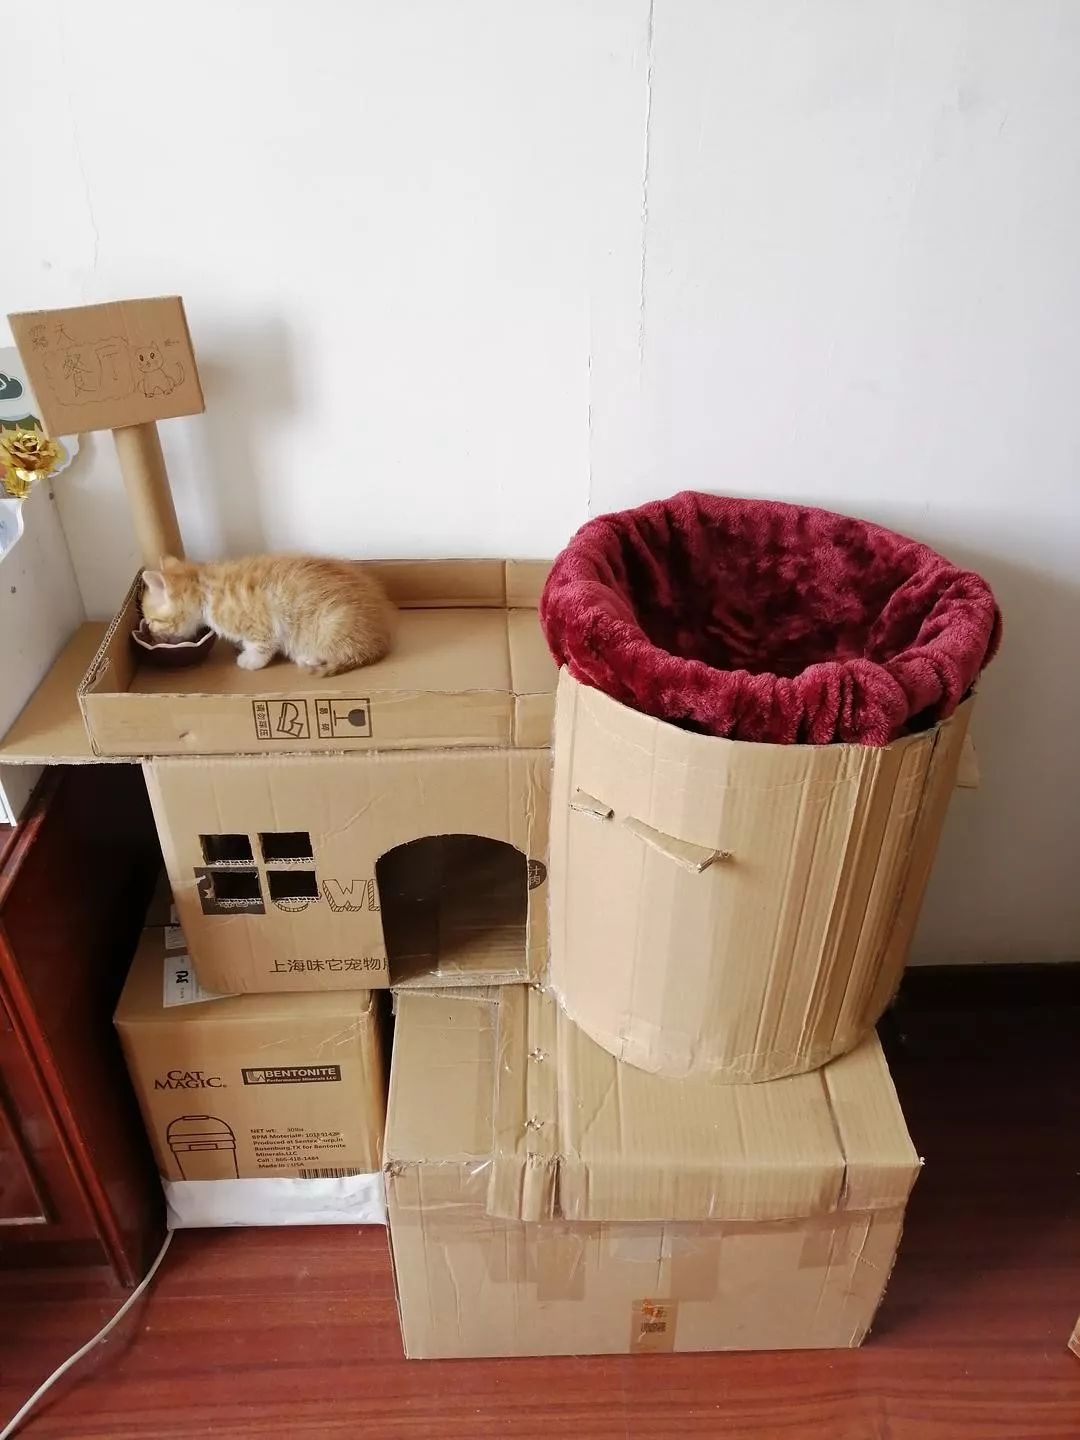 用快递纸箱做的猫别墅